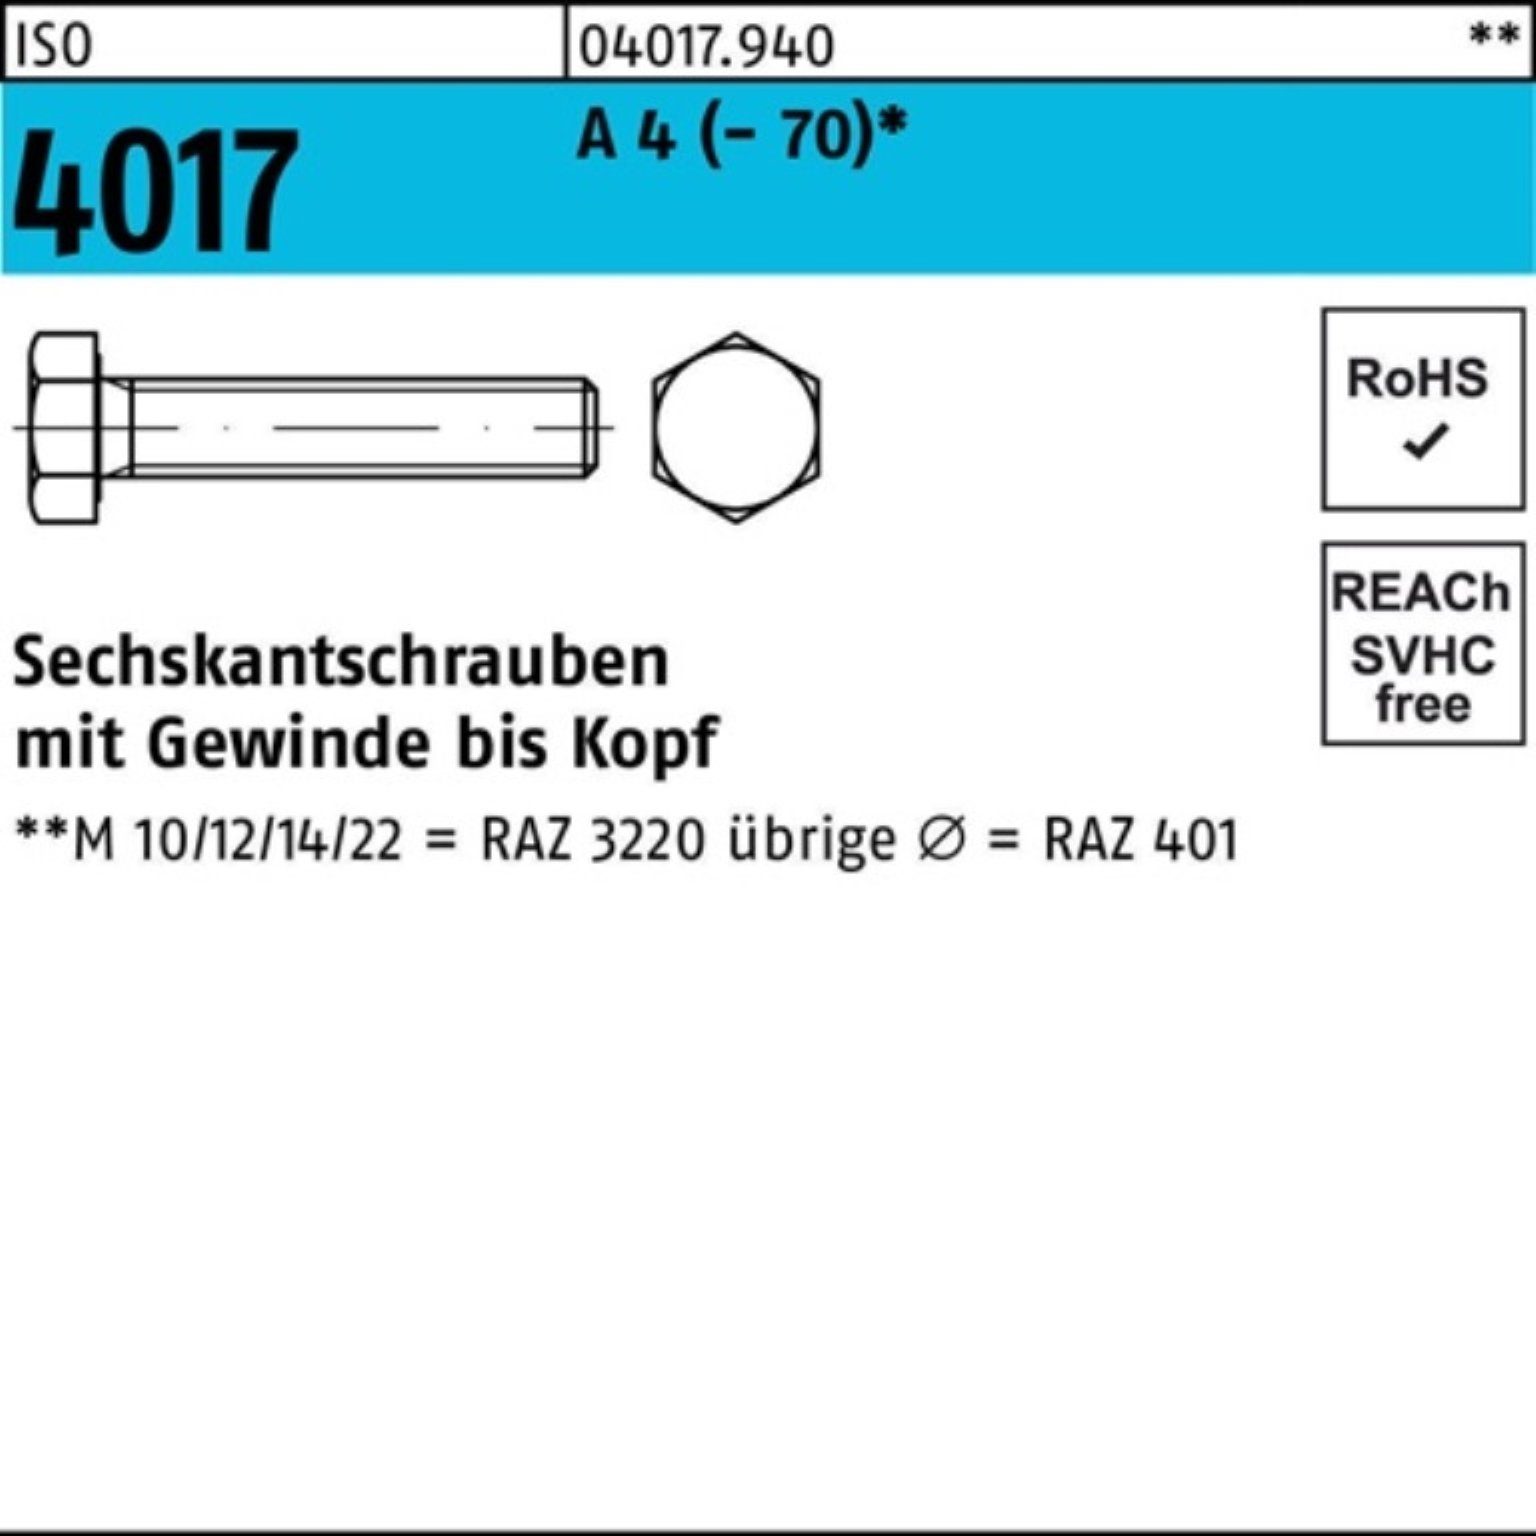 Bufab Sechskantschraube 100er 100 4017 (70) Pack VG A 22 4 Stück Sechskantschraube M12x ISO